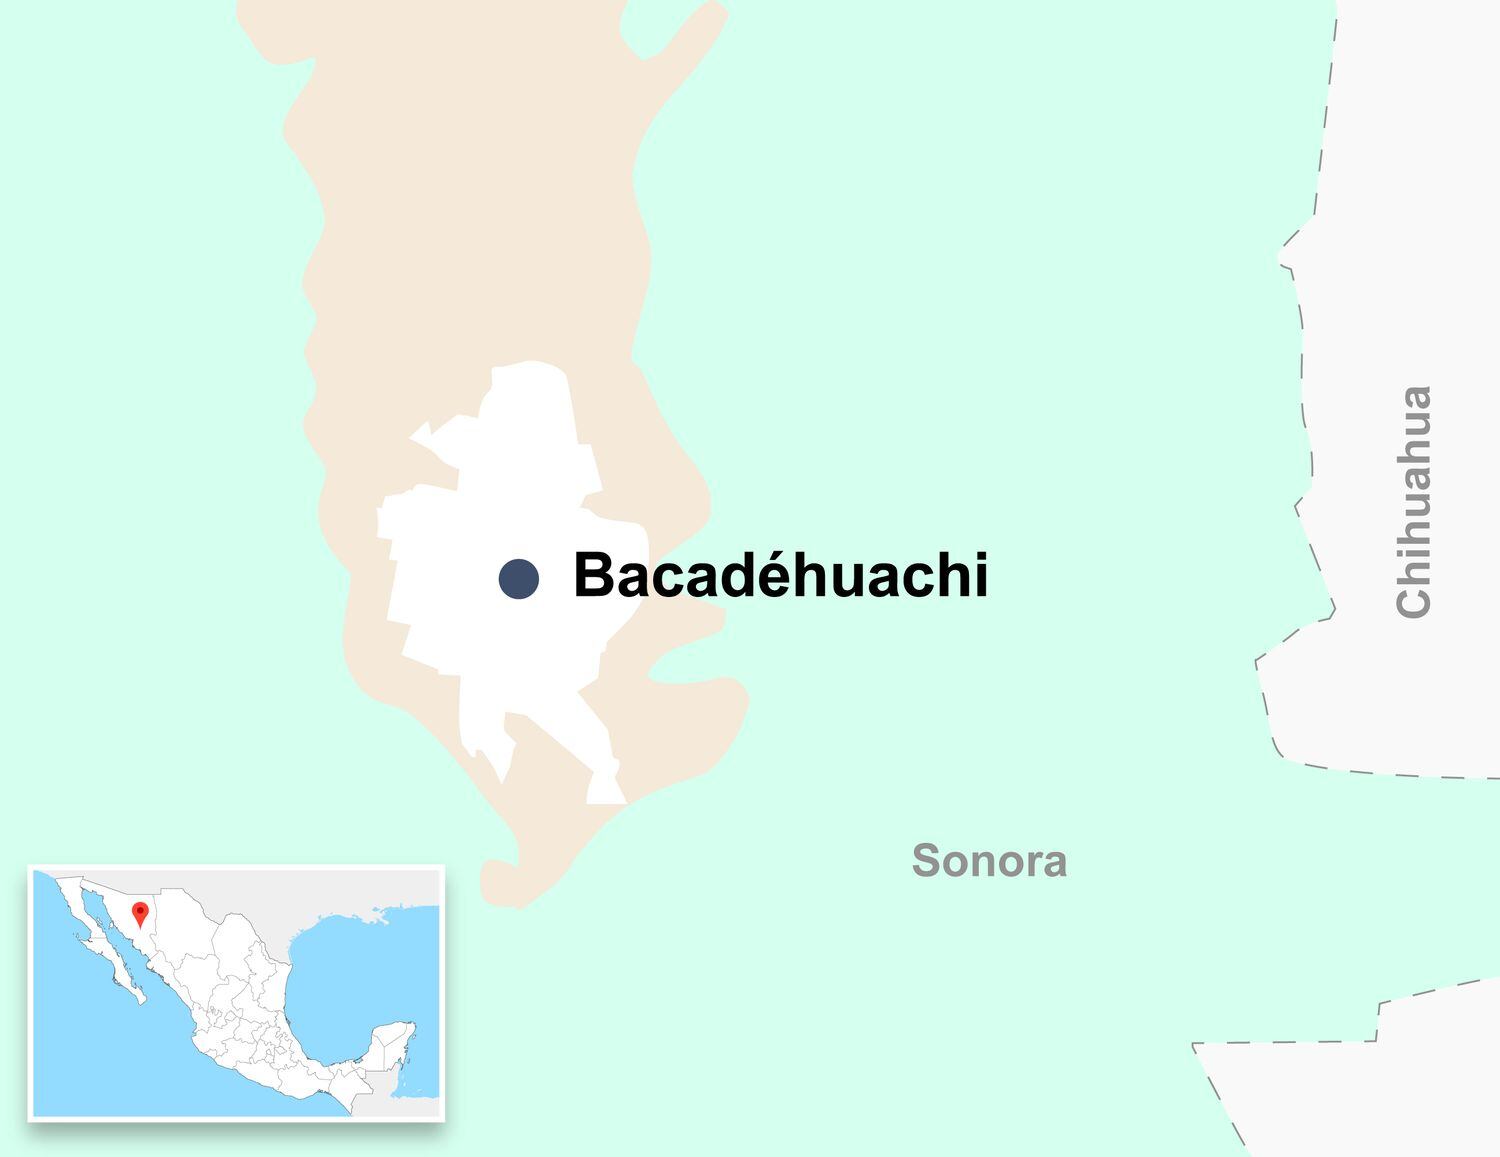 El yacimiento de litio de Bacadéhuachi se ubica en Sonora (norte de México).